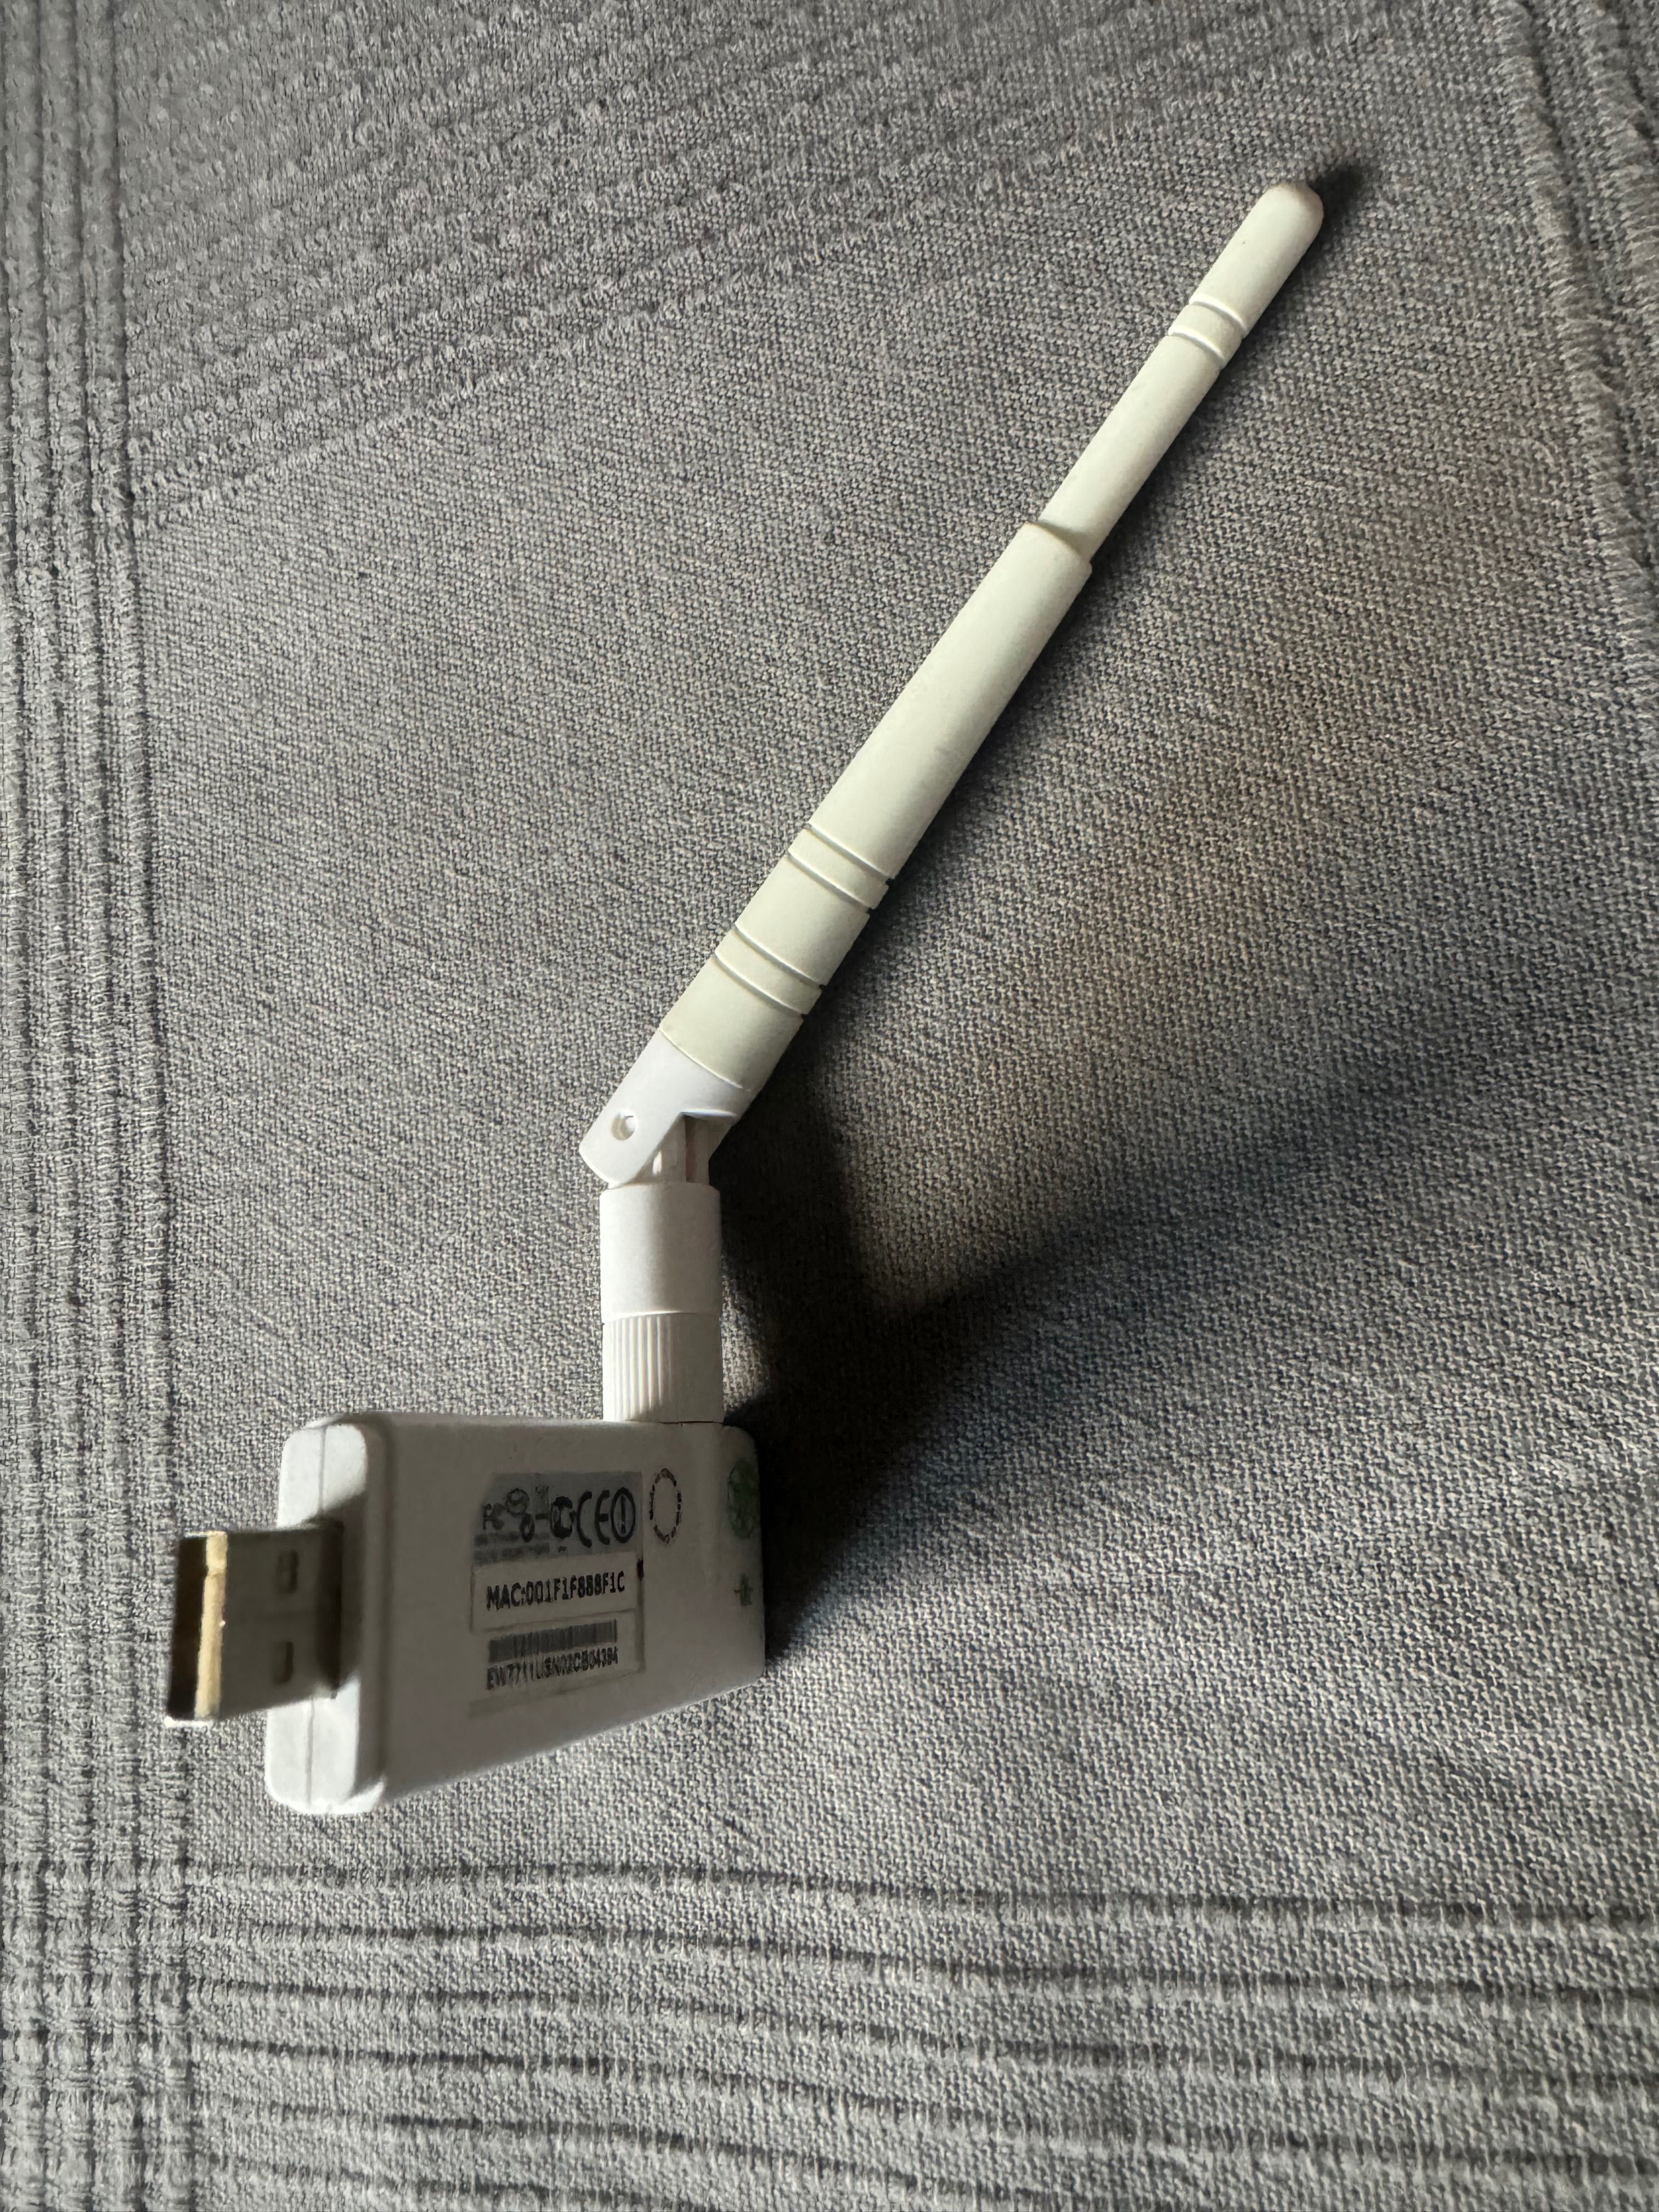 Karta bezprzewodowa USB Edimax EW-7711USn z anteną 3dBi.